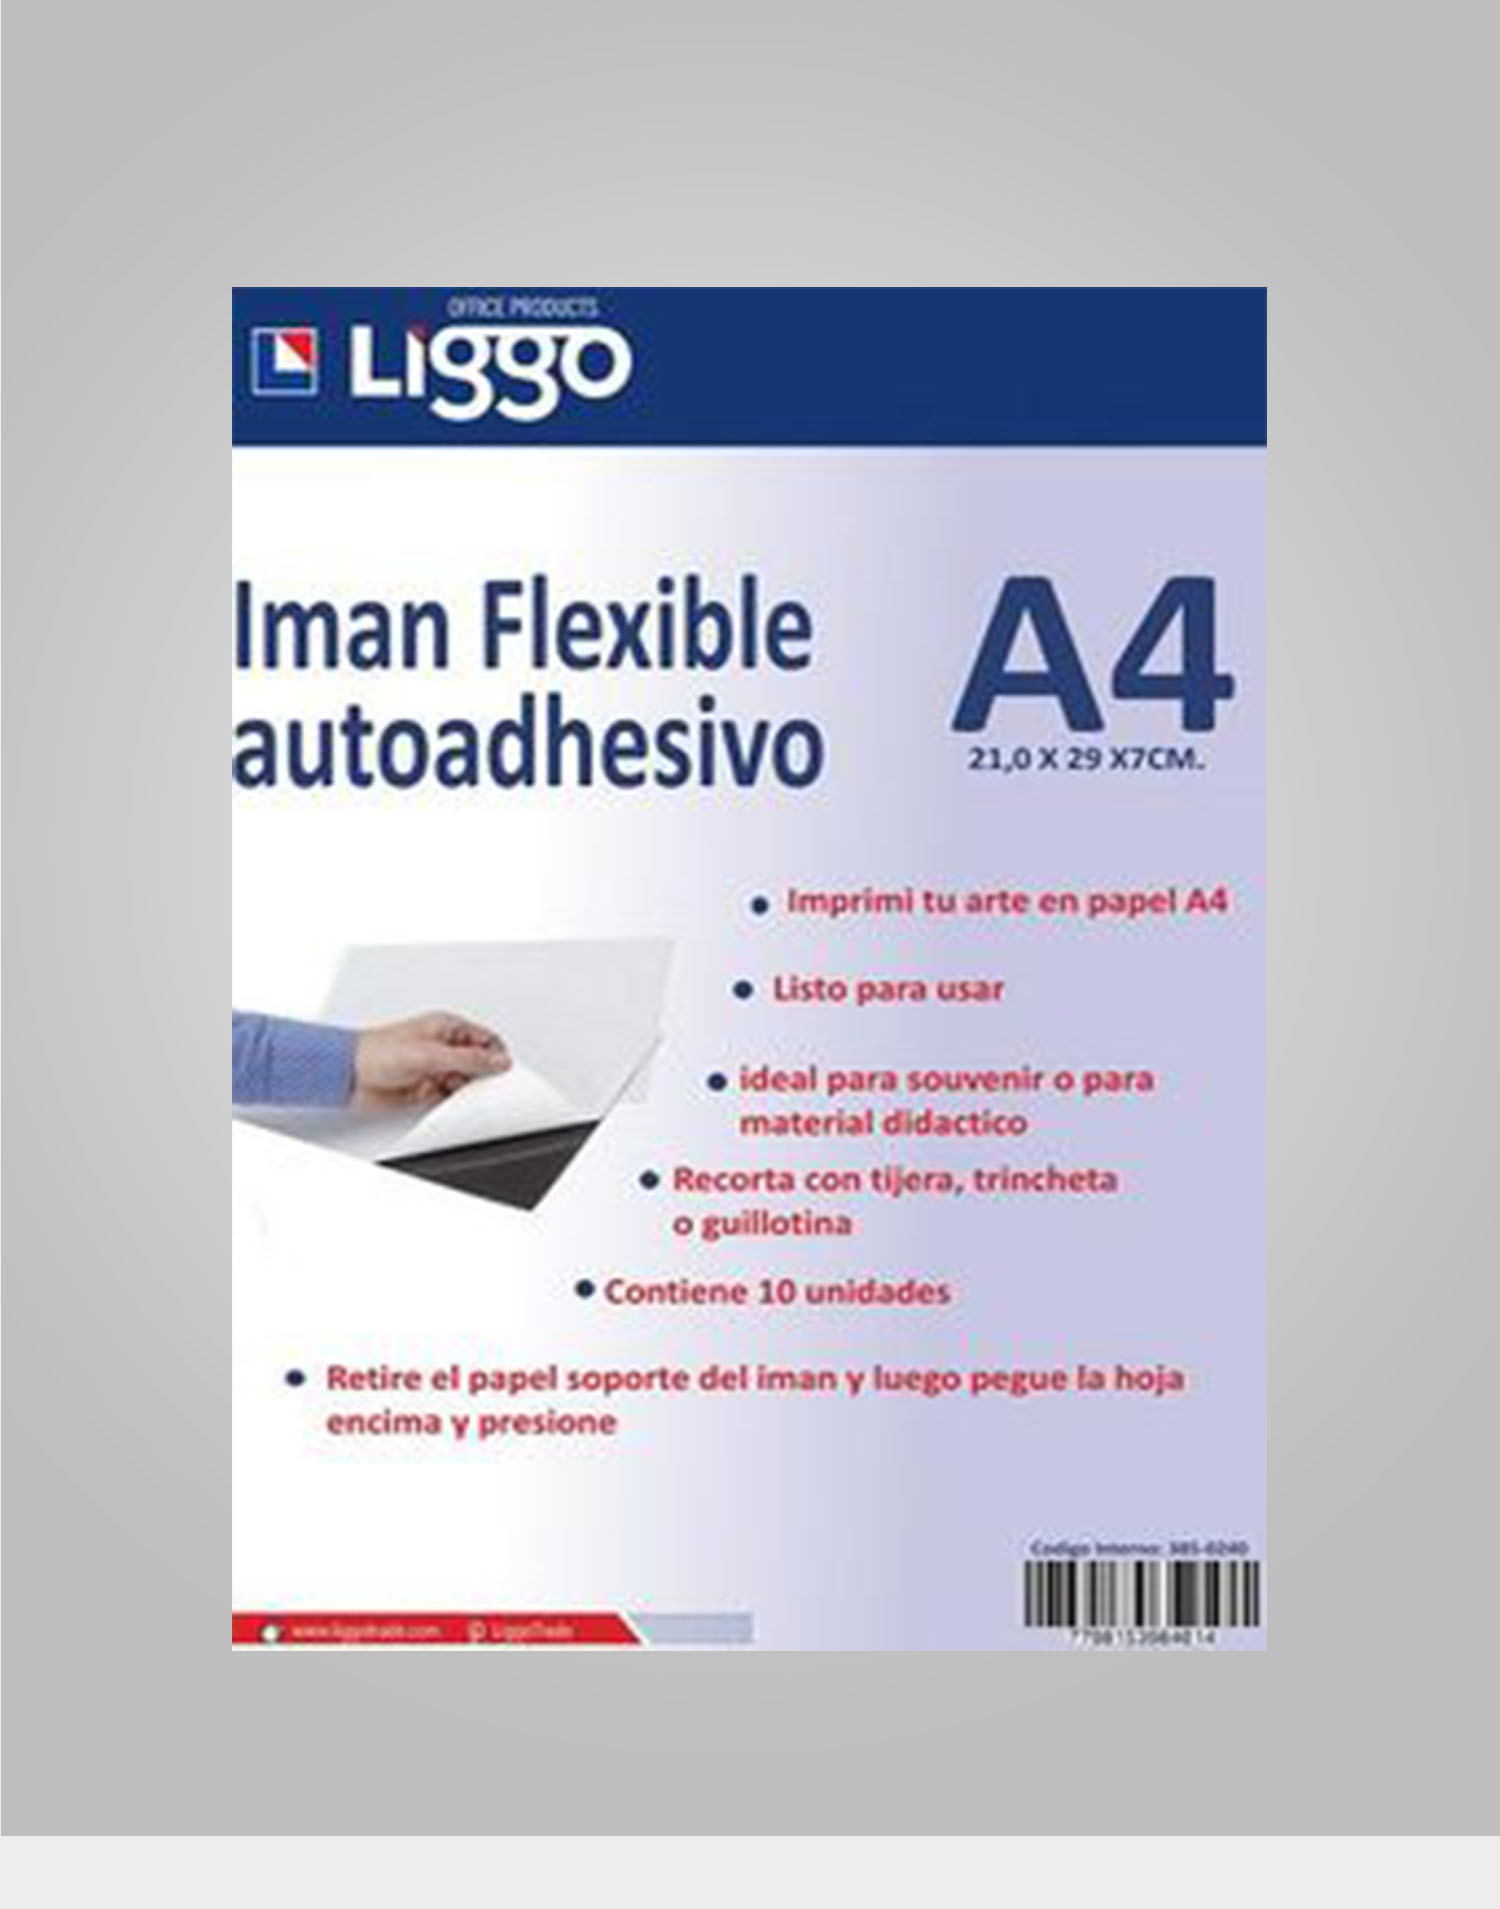 Iman flexible A4 autoadhesivo – Liggo Trade